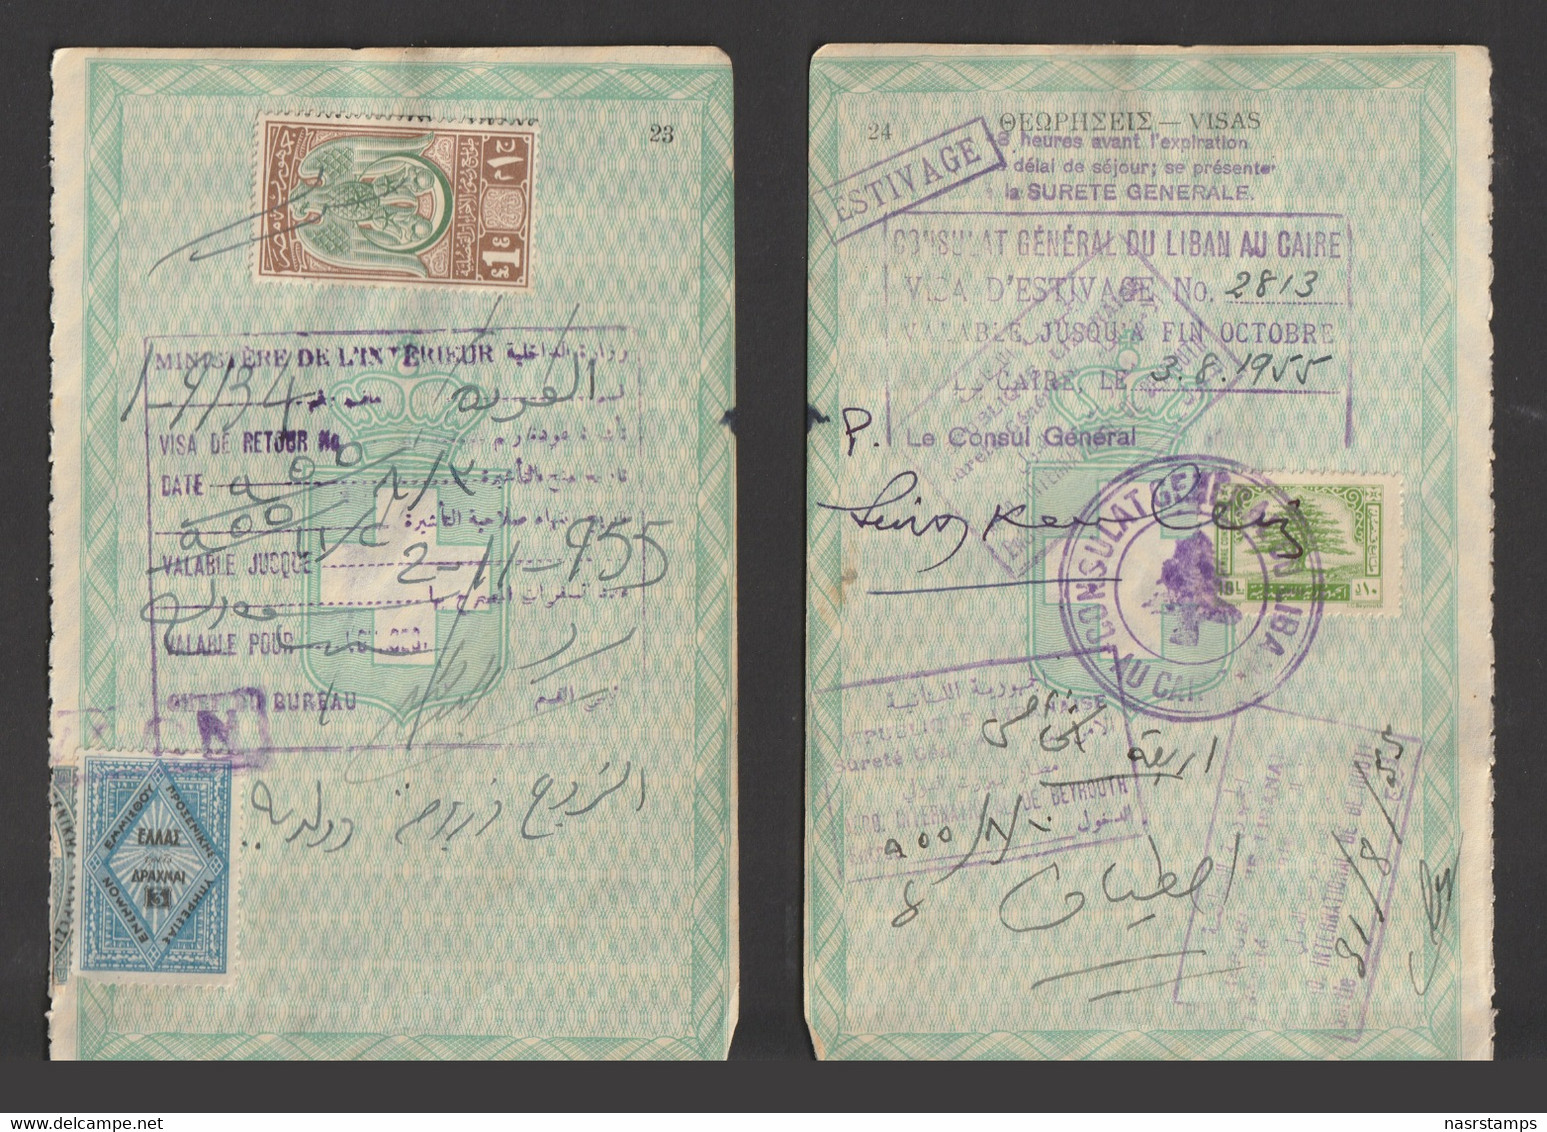 Egypt - 1955 - Rare Revenue - Consular / Passport - The Republic Eagle Issue - 1 EGP - Usados